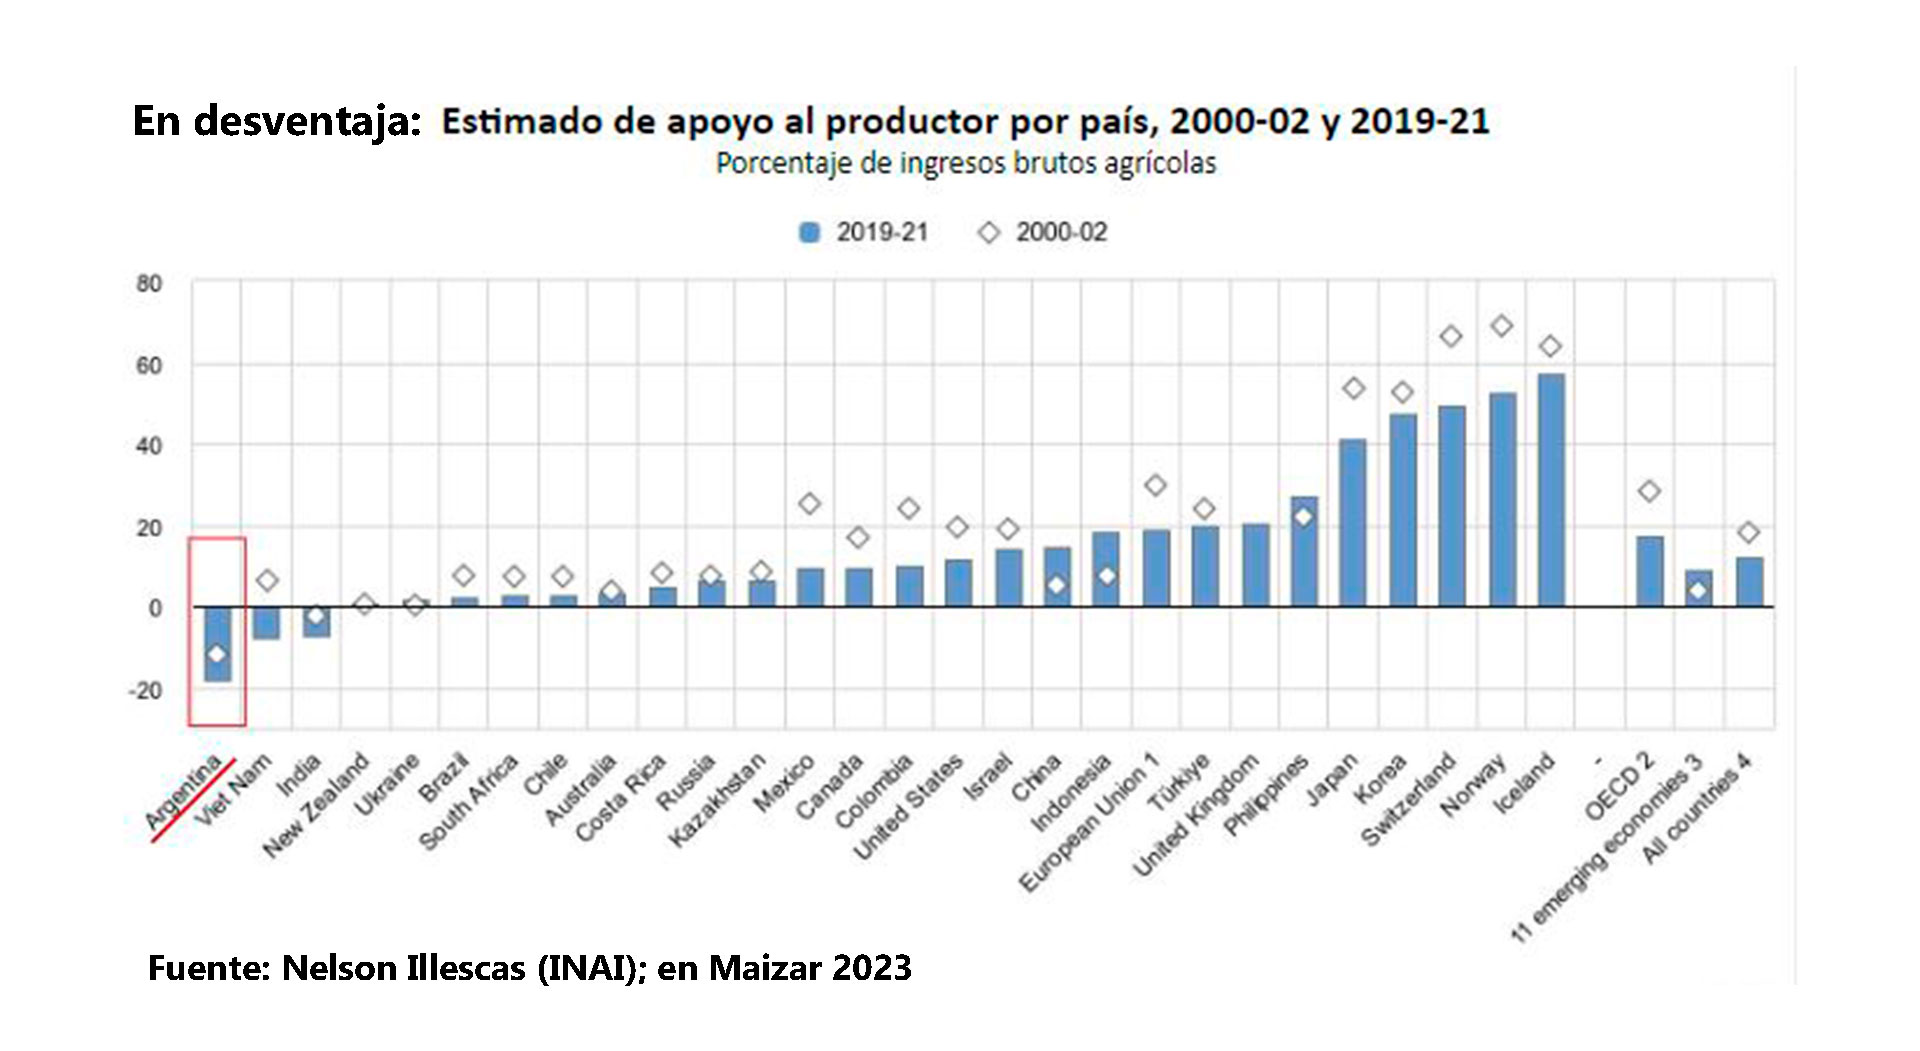 El aliento (barras por arriba de cero) y desaliento a la producción maicera en diferentes países del mundo. La Argentina, en un extremo